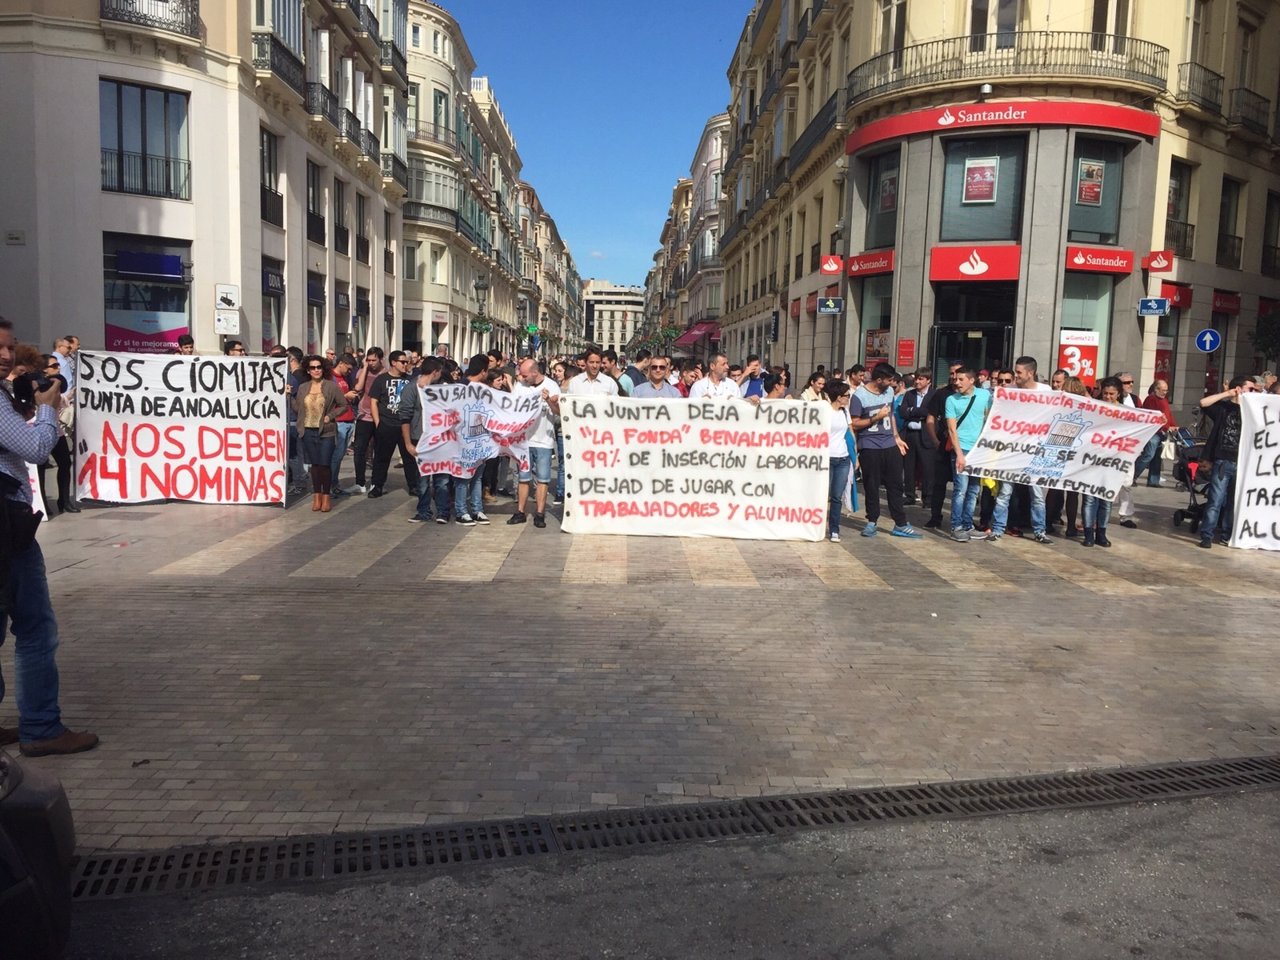 Manifestación cónsula fonda ciomijas capital junta pago nóminas